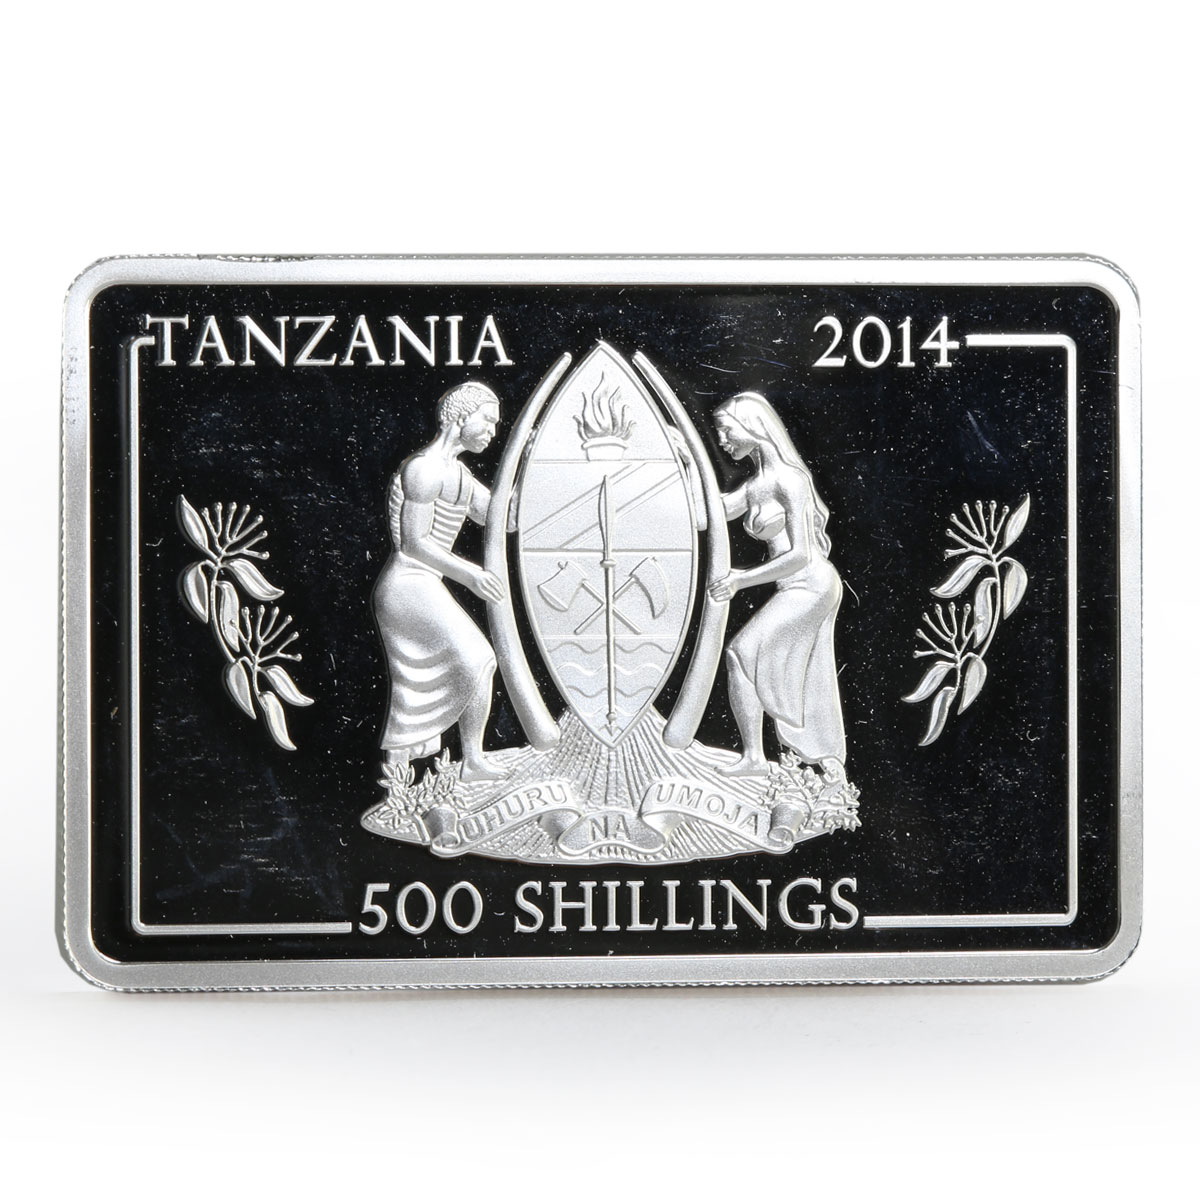 Tanzania 500 shillings Navy Flagships series Admiral Kuznetsov silver coin 2014